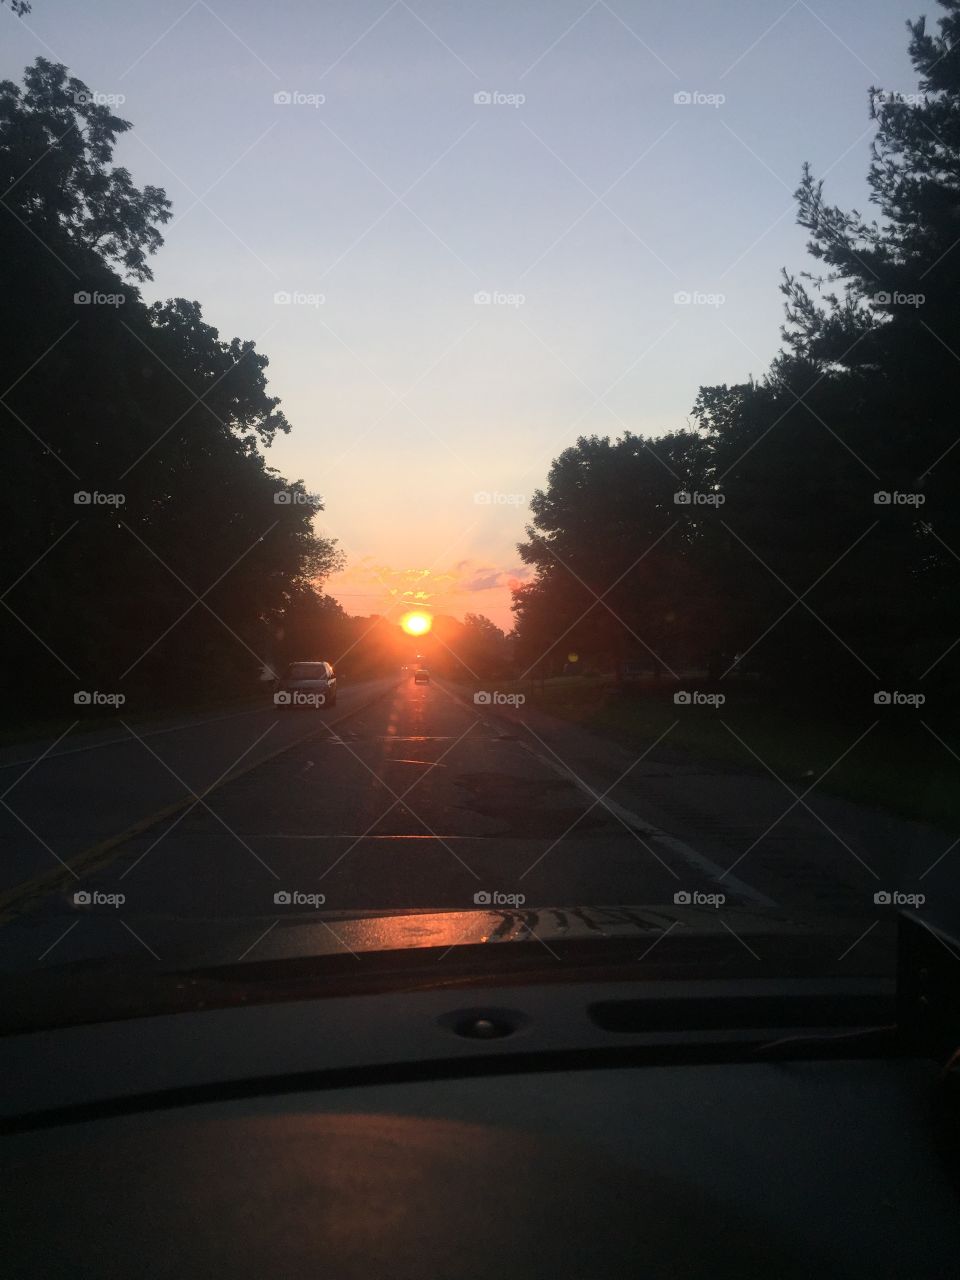 Sun rise